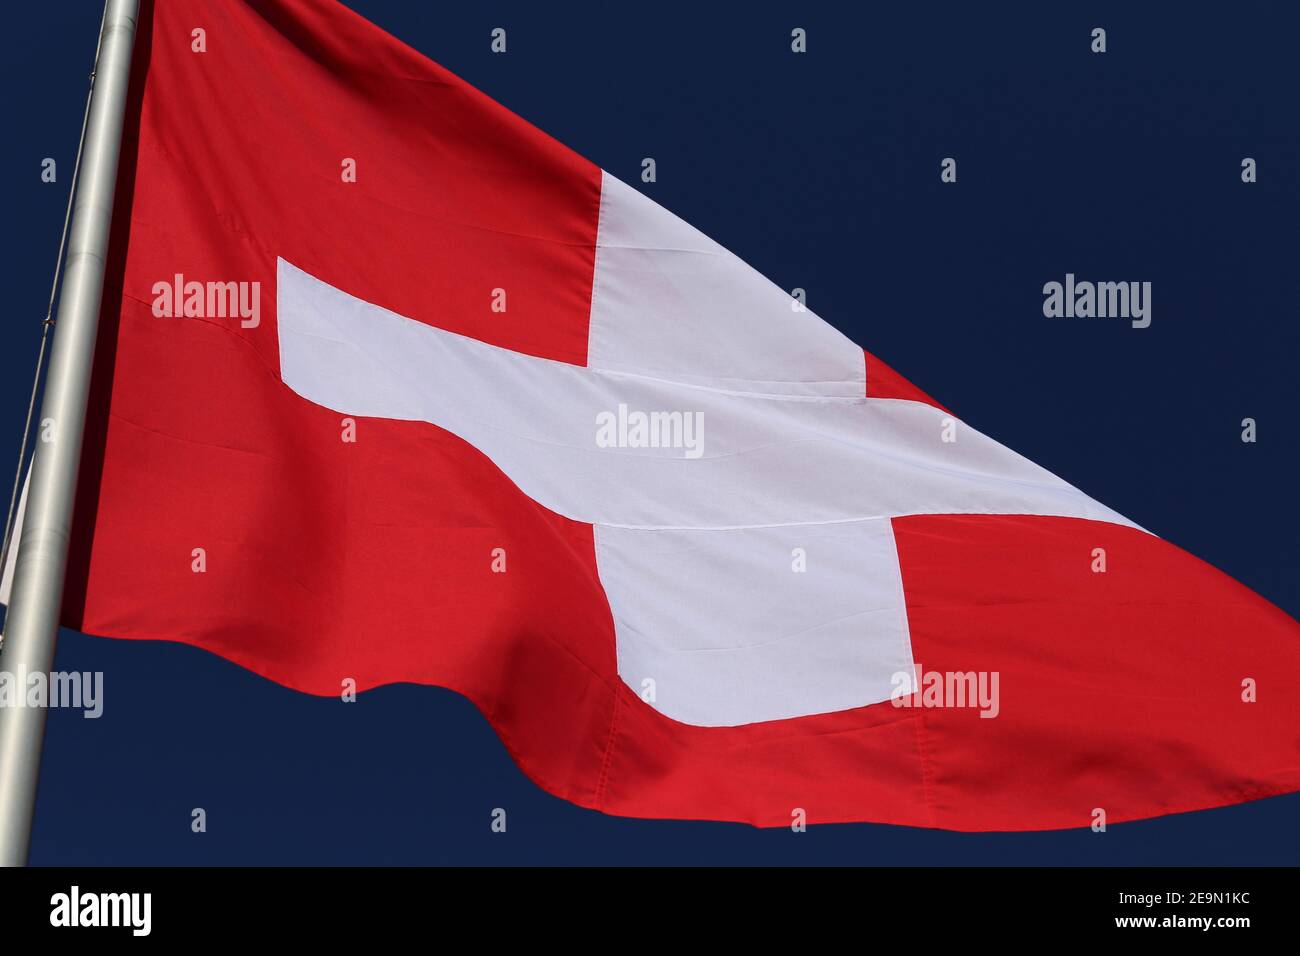 Le drapeau de la Suisse pendant une journée venteuse. Gros plan du drapeau rouge et blanc avec le ciel bleu en arrière-plan. Symbole de l'indépendance et de la nationalité. Banque D'Images